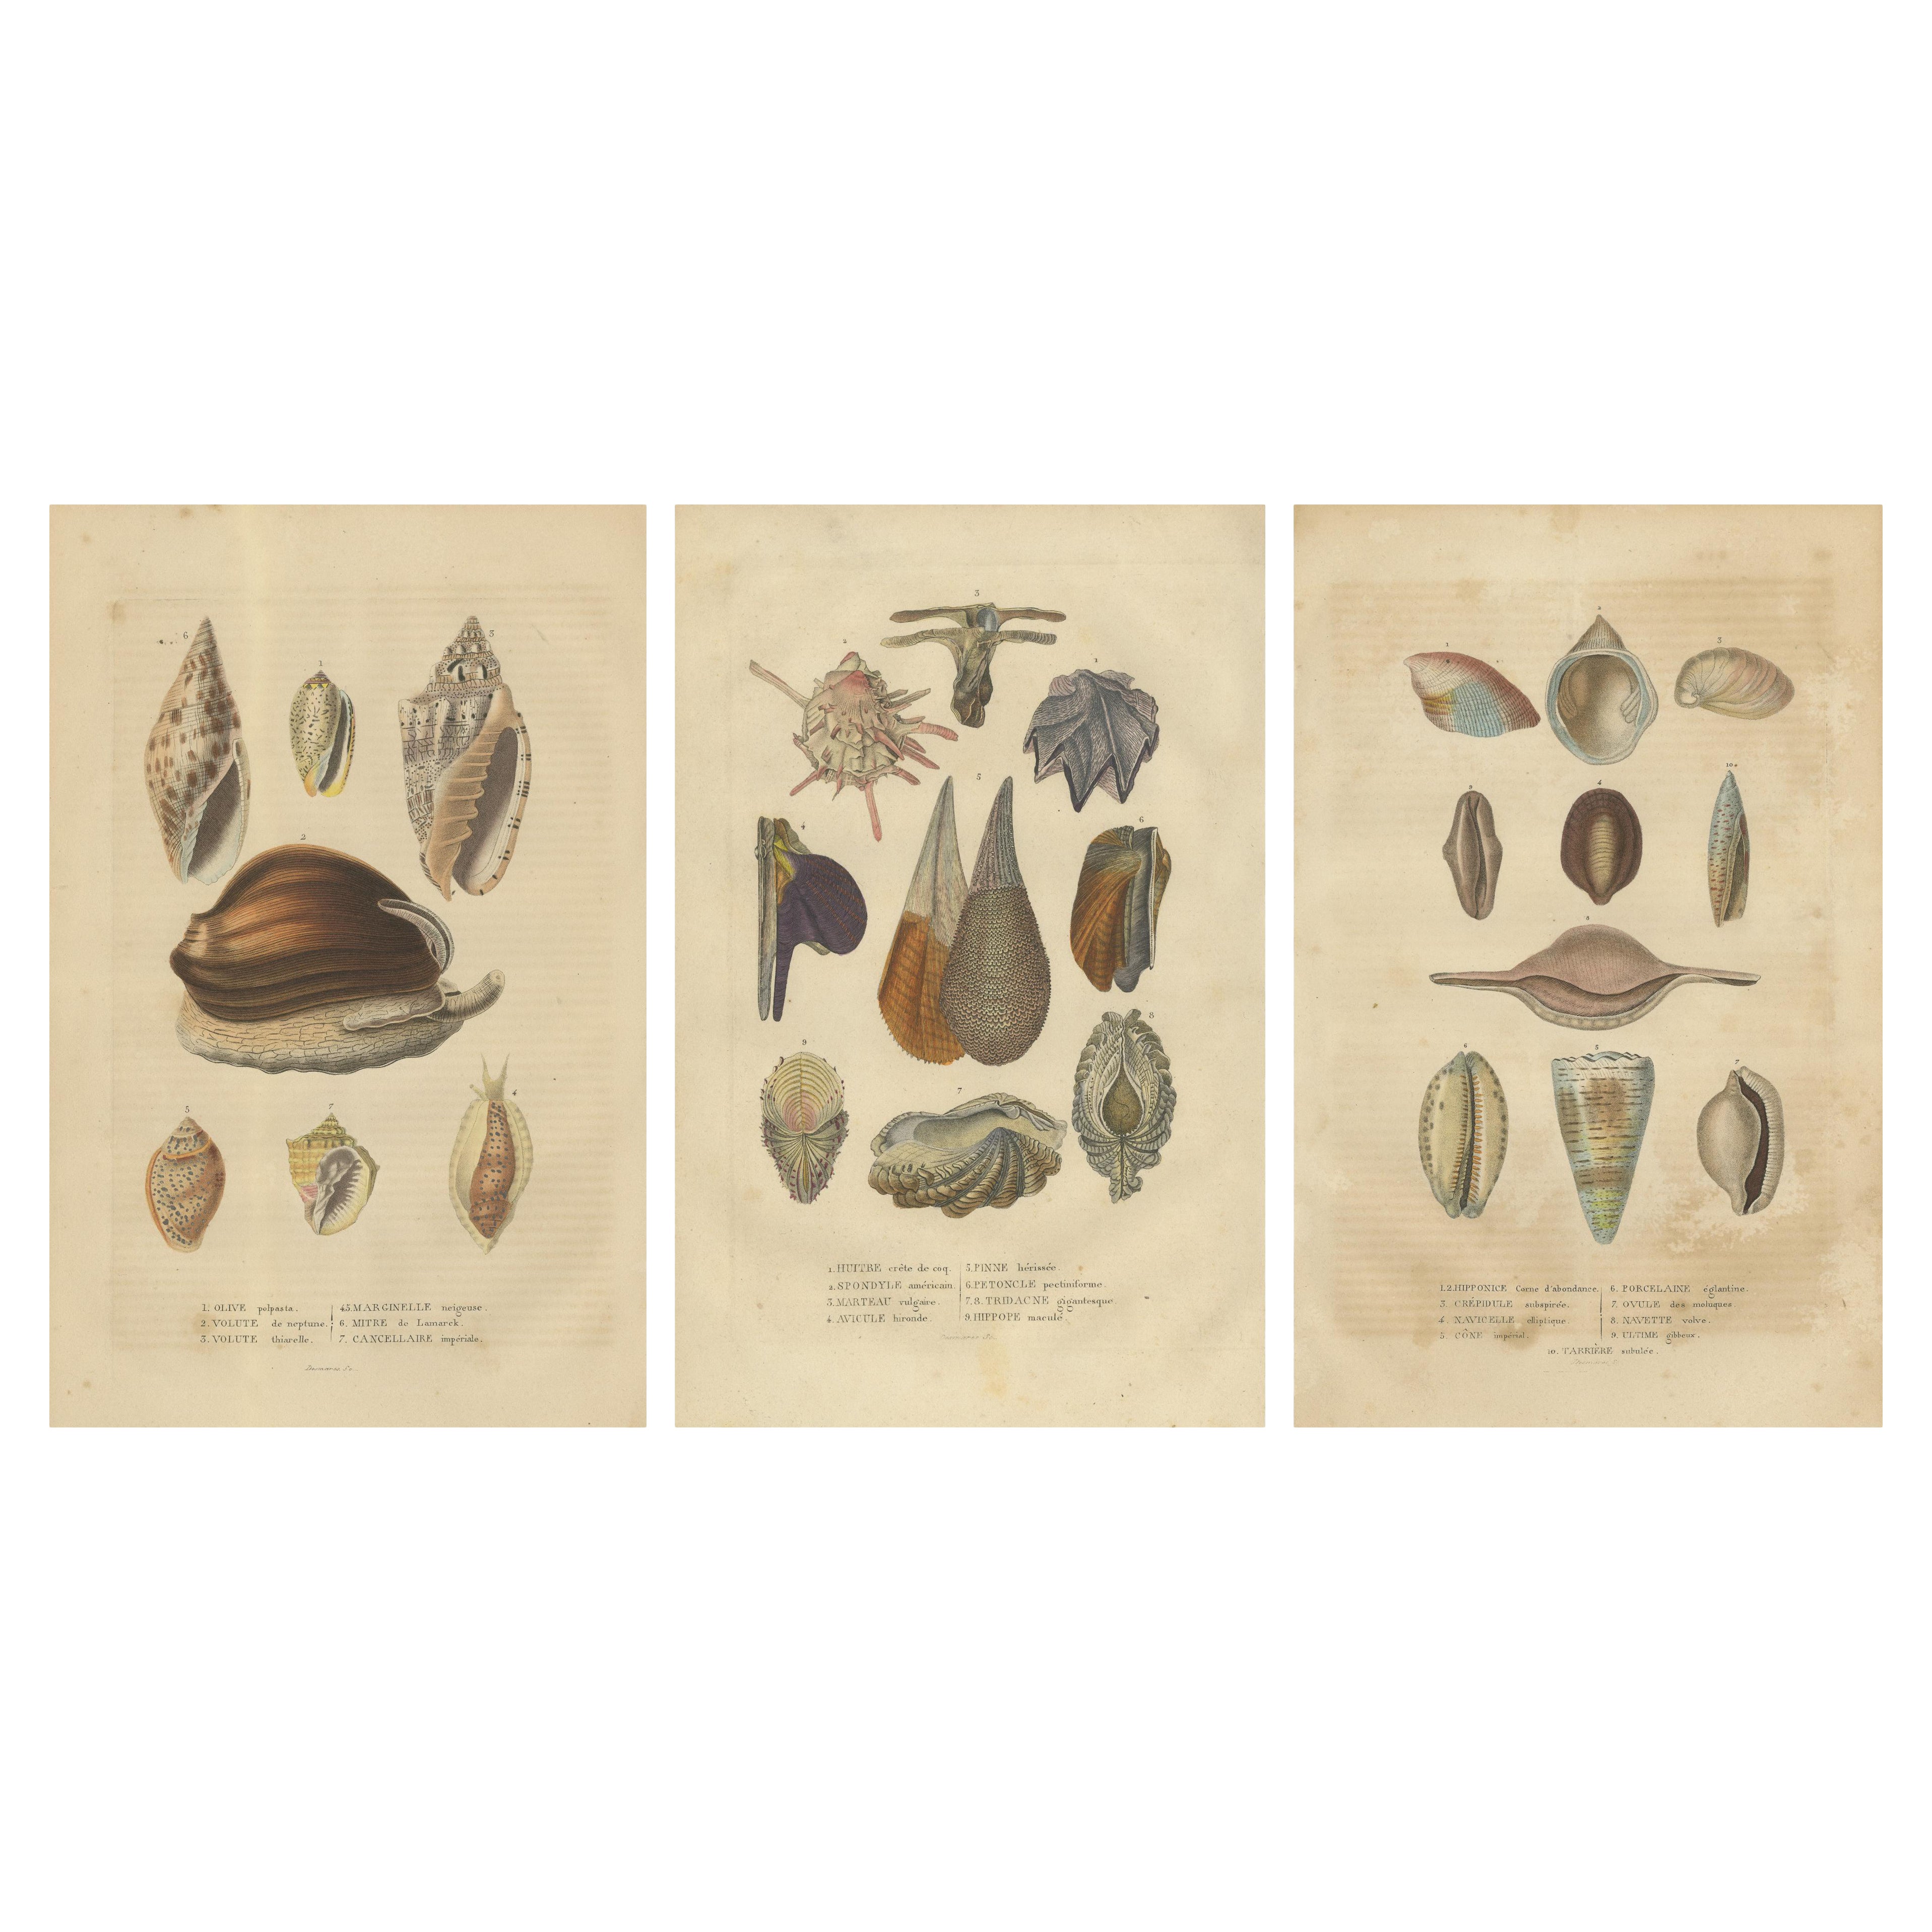 Marine Eleganz: Ein Mosaik der Molluskenvielfalt im 19. Jahrhundert, 1845